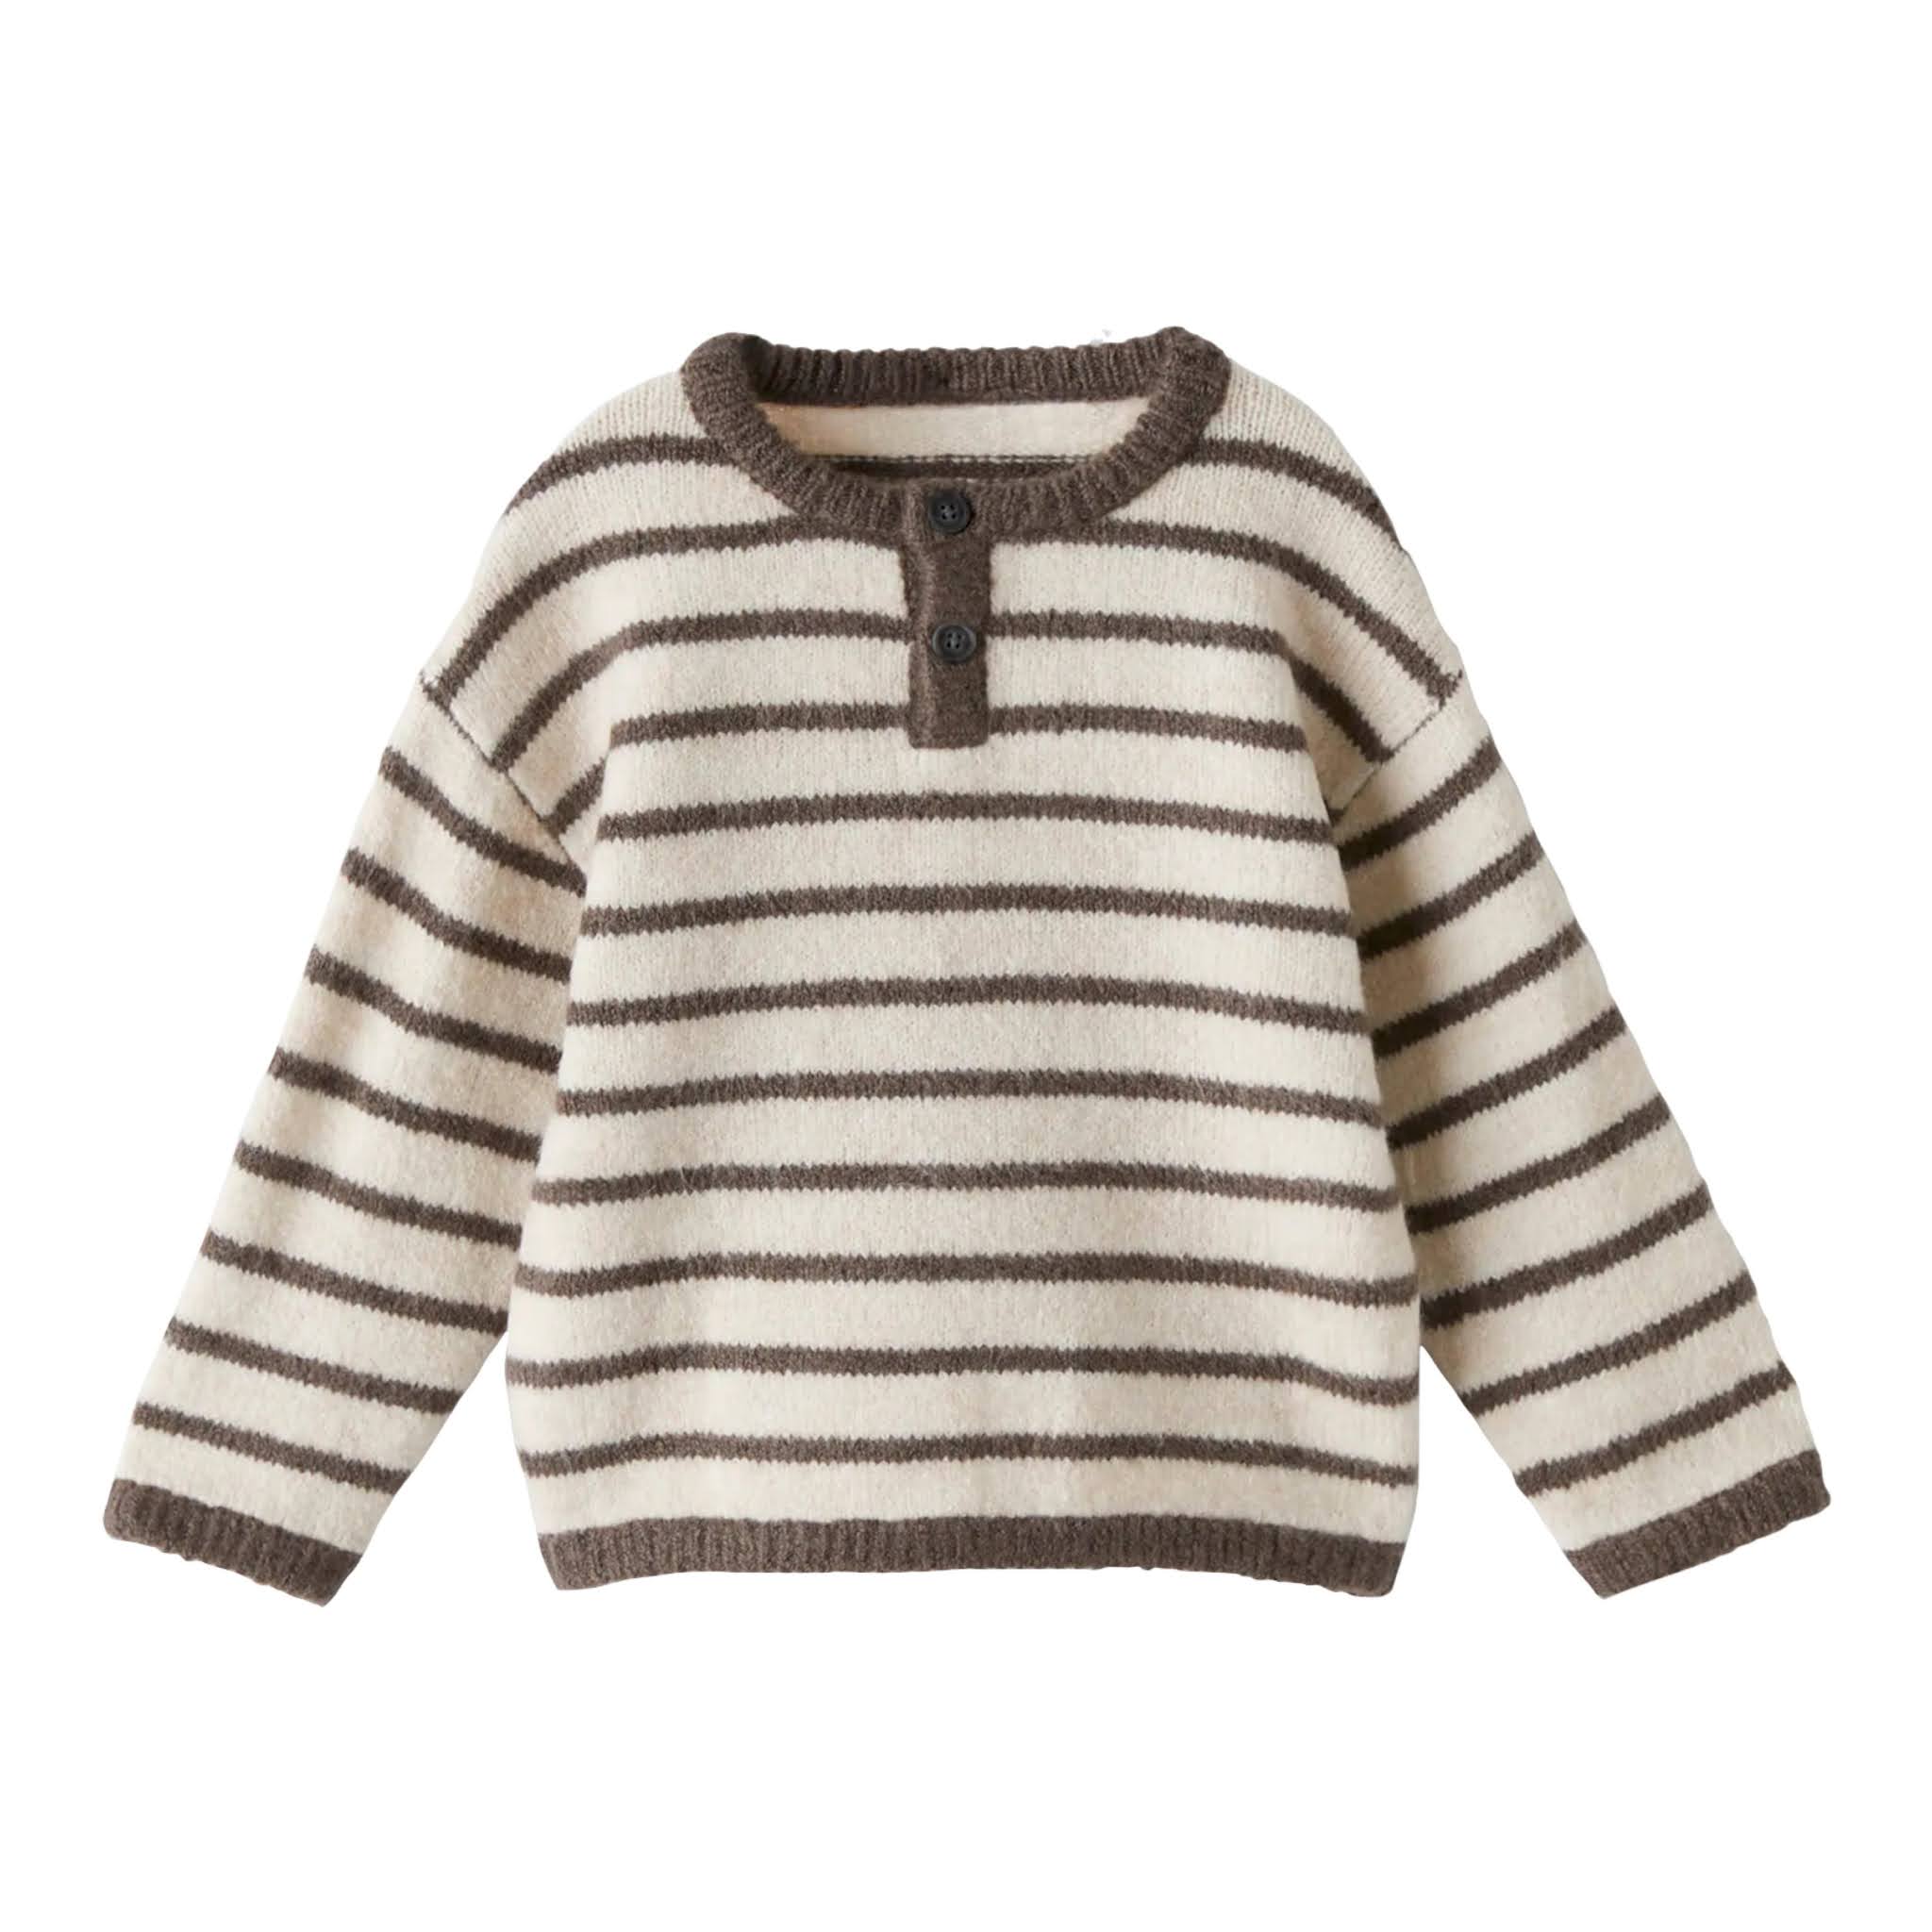 Striped Knit Henley Sweater from Zara Kids